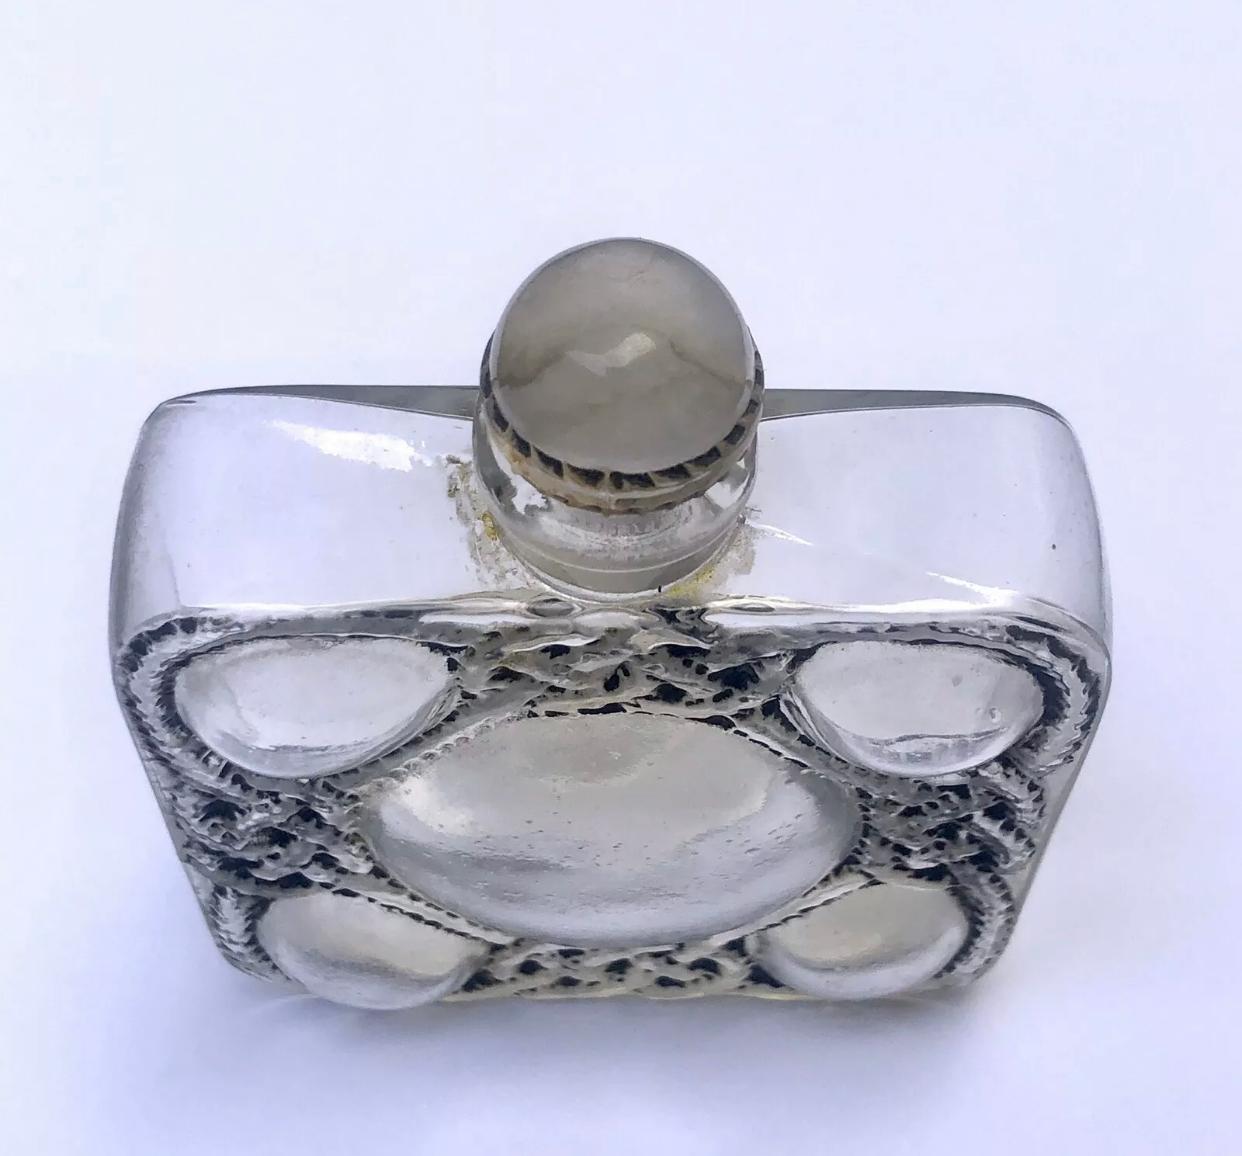 Molded 1926 Rene Lalique Les Cinq Fleurs Perfume Bottle for Forvil Black Enameled Glass